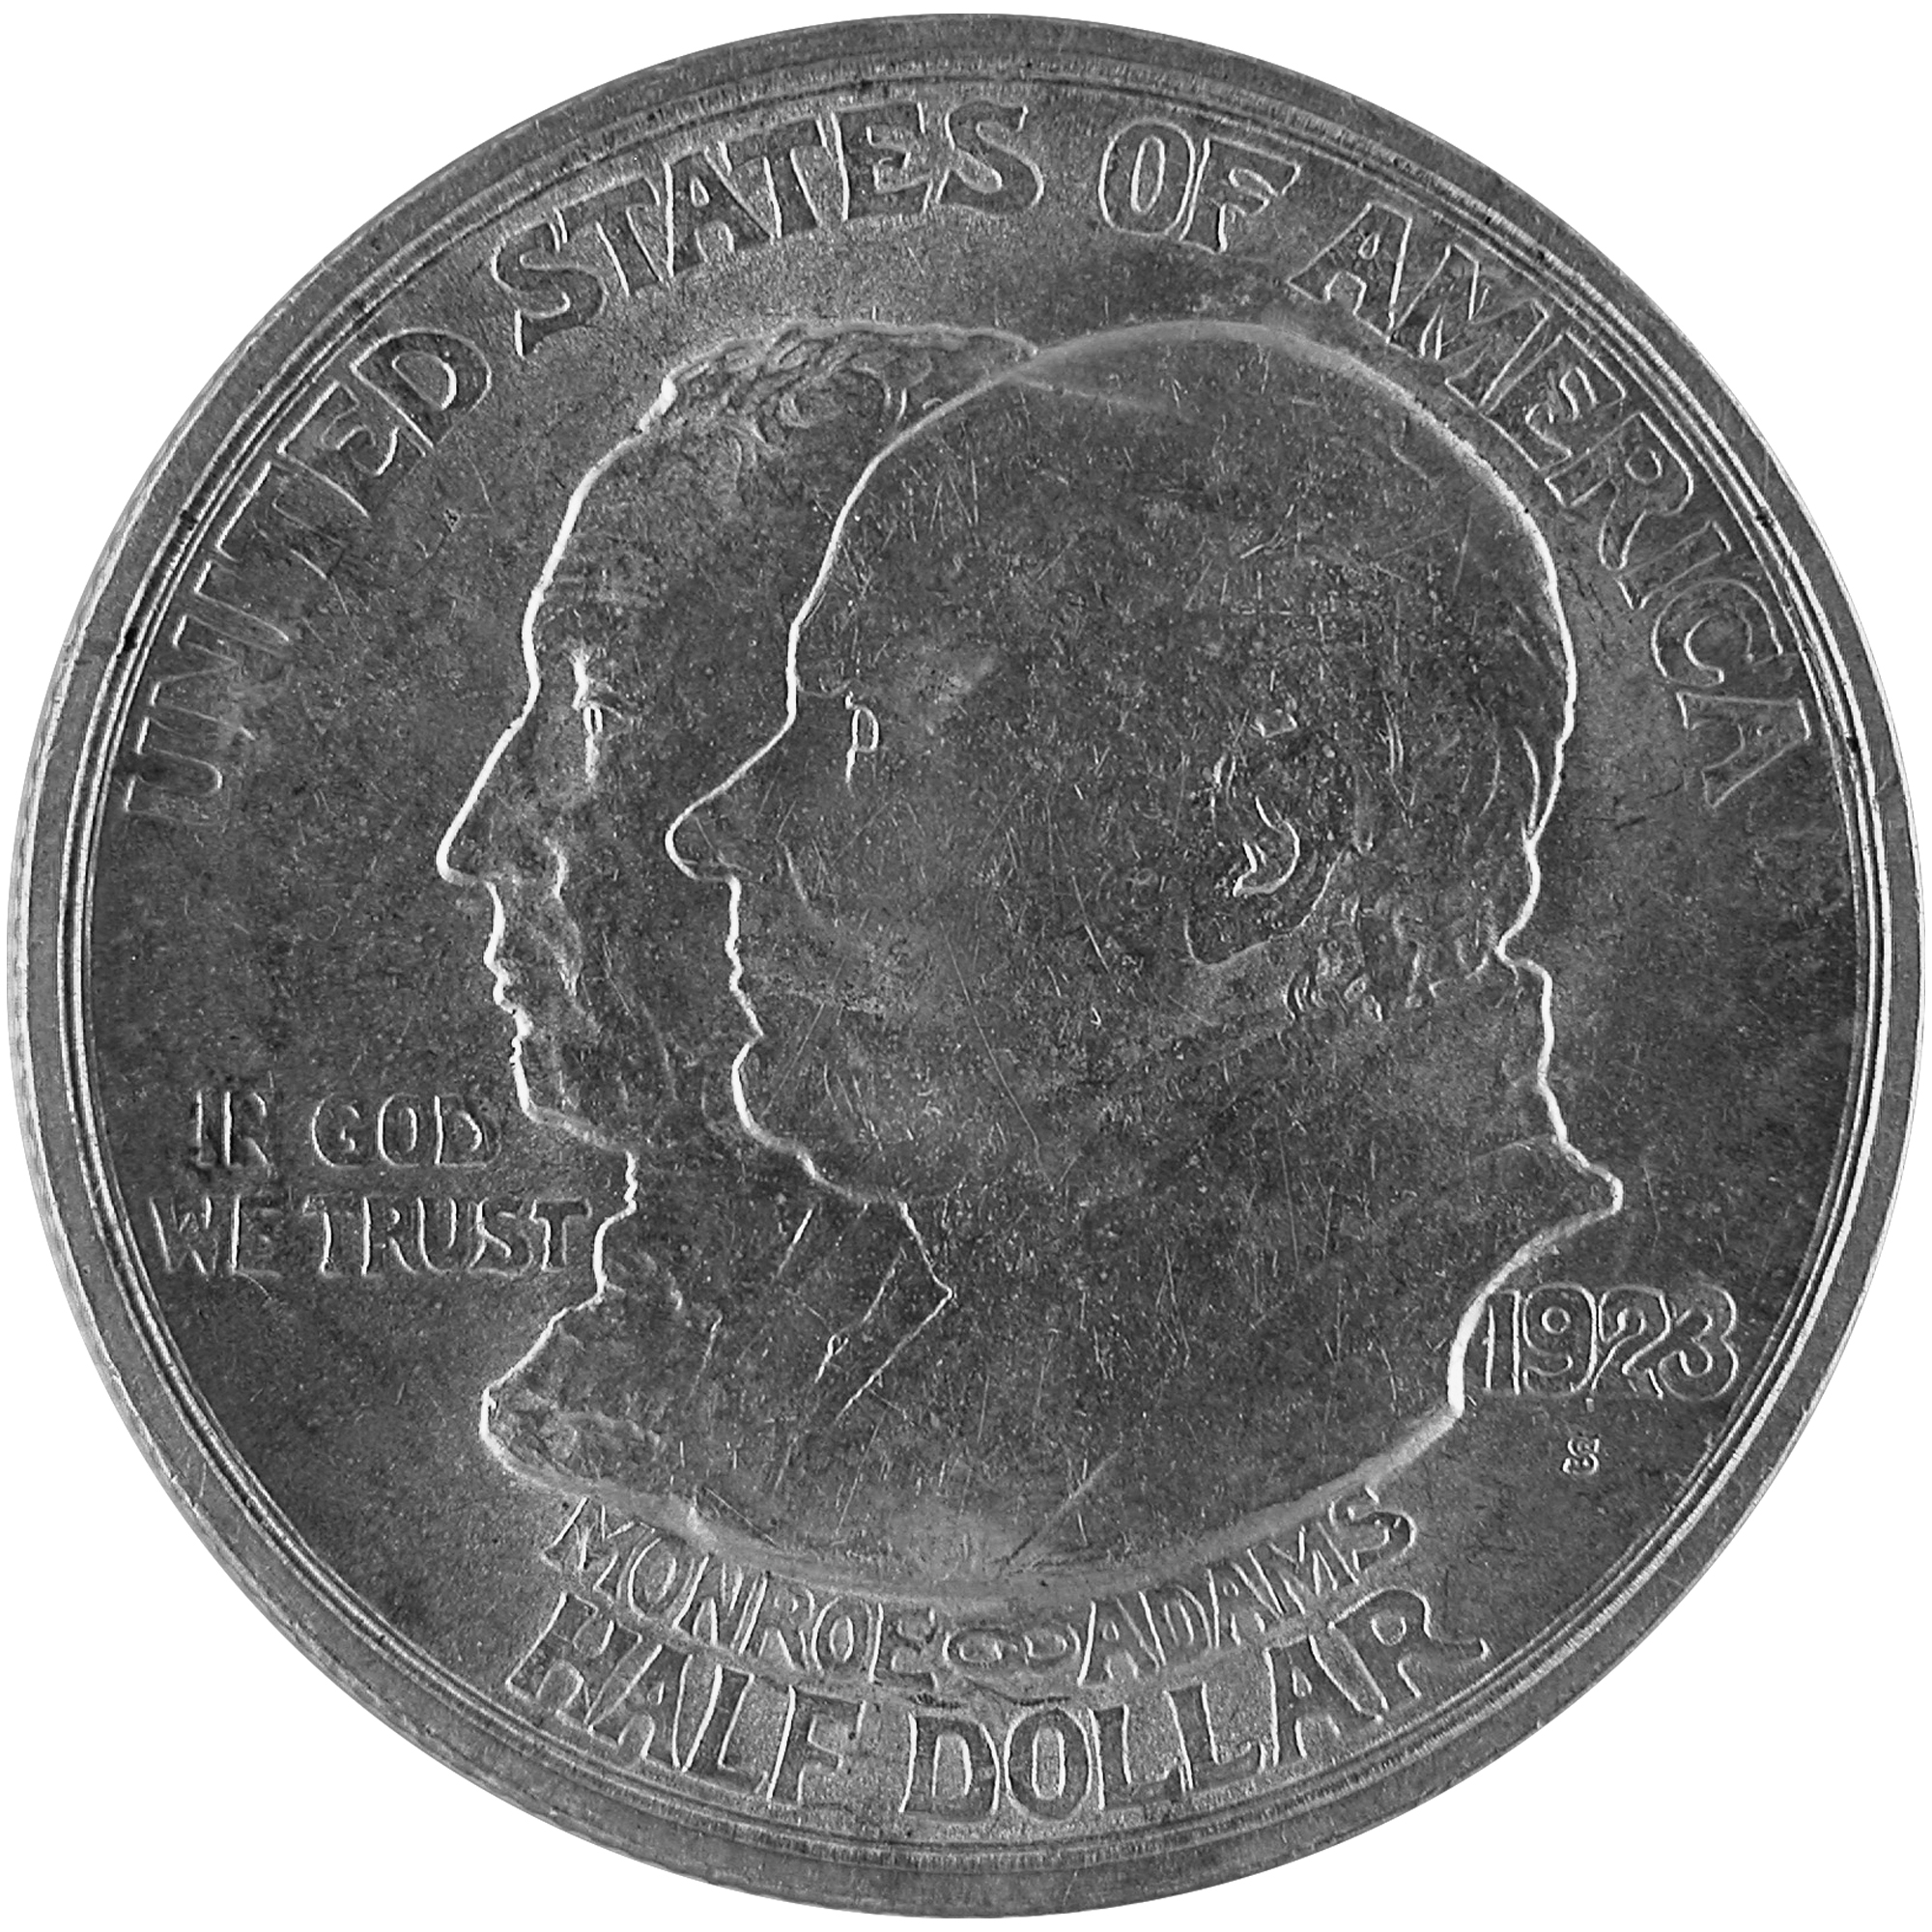 1923 Monroe Doctrine Centennial Commemorative Silver Half Dollar Coin Obverse